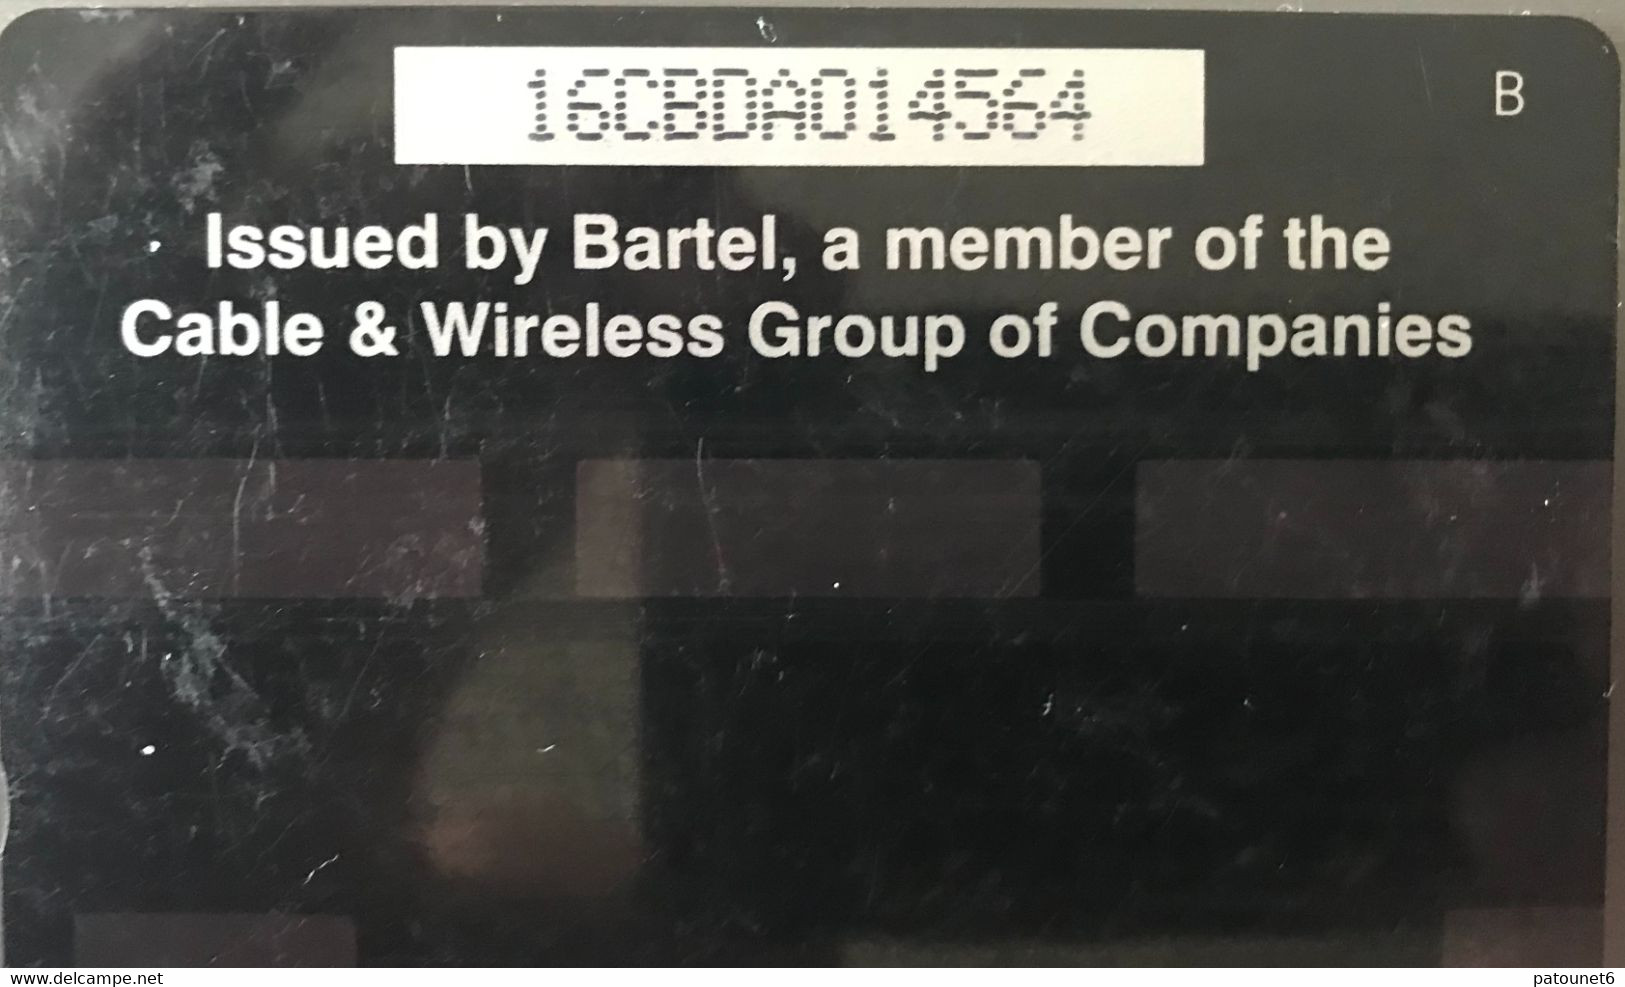 BARBADES  -  Phonecard  -  Grop Over 95 - BARTEL - BDS $ 20 - Barbados (Barbuda)